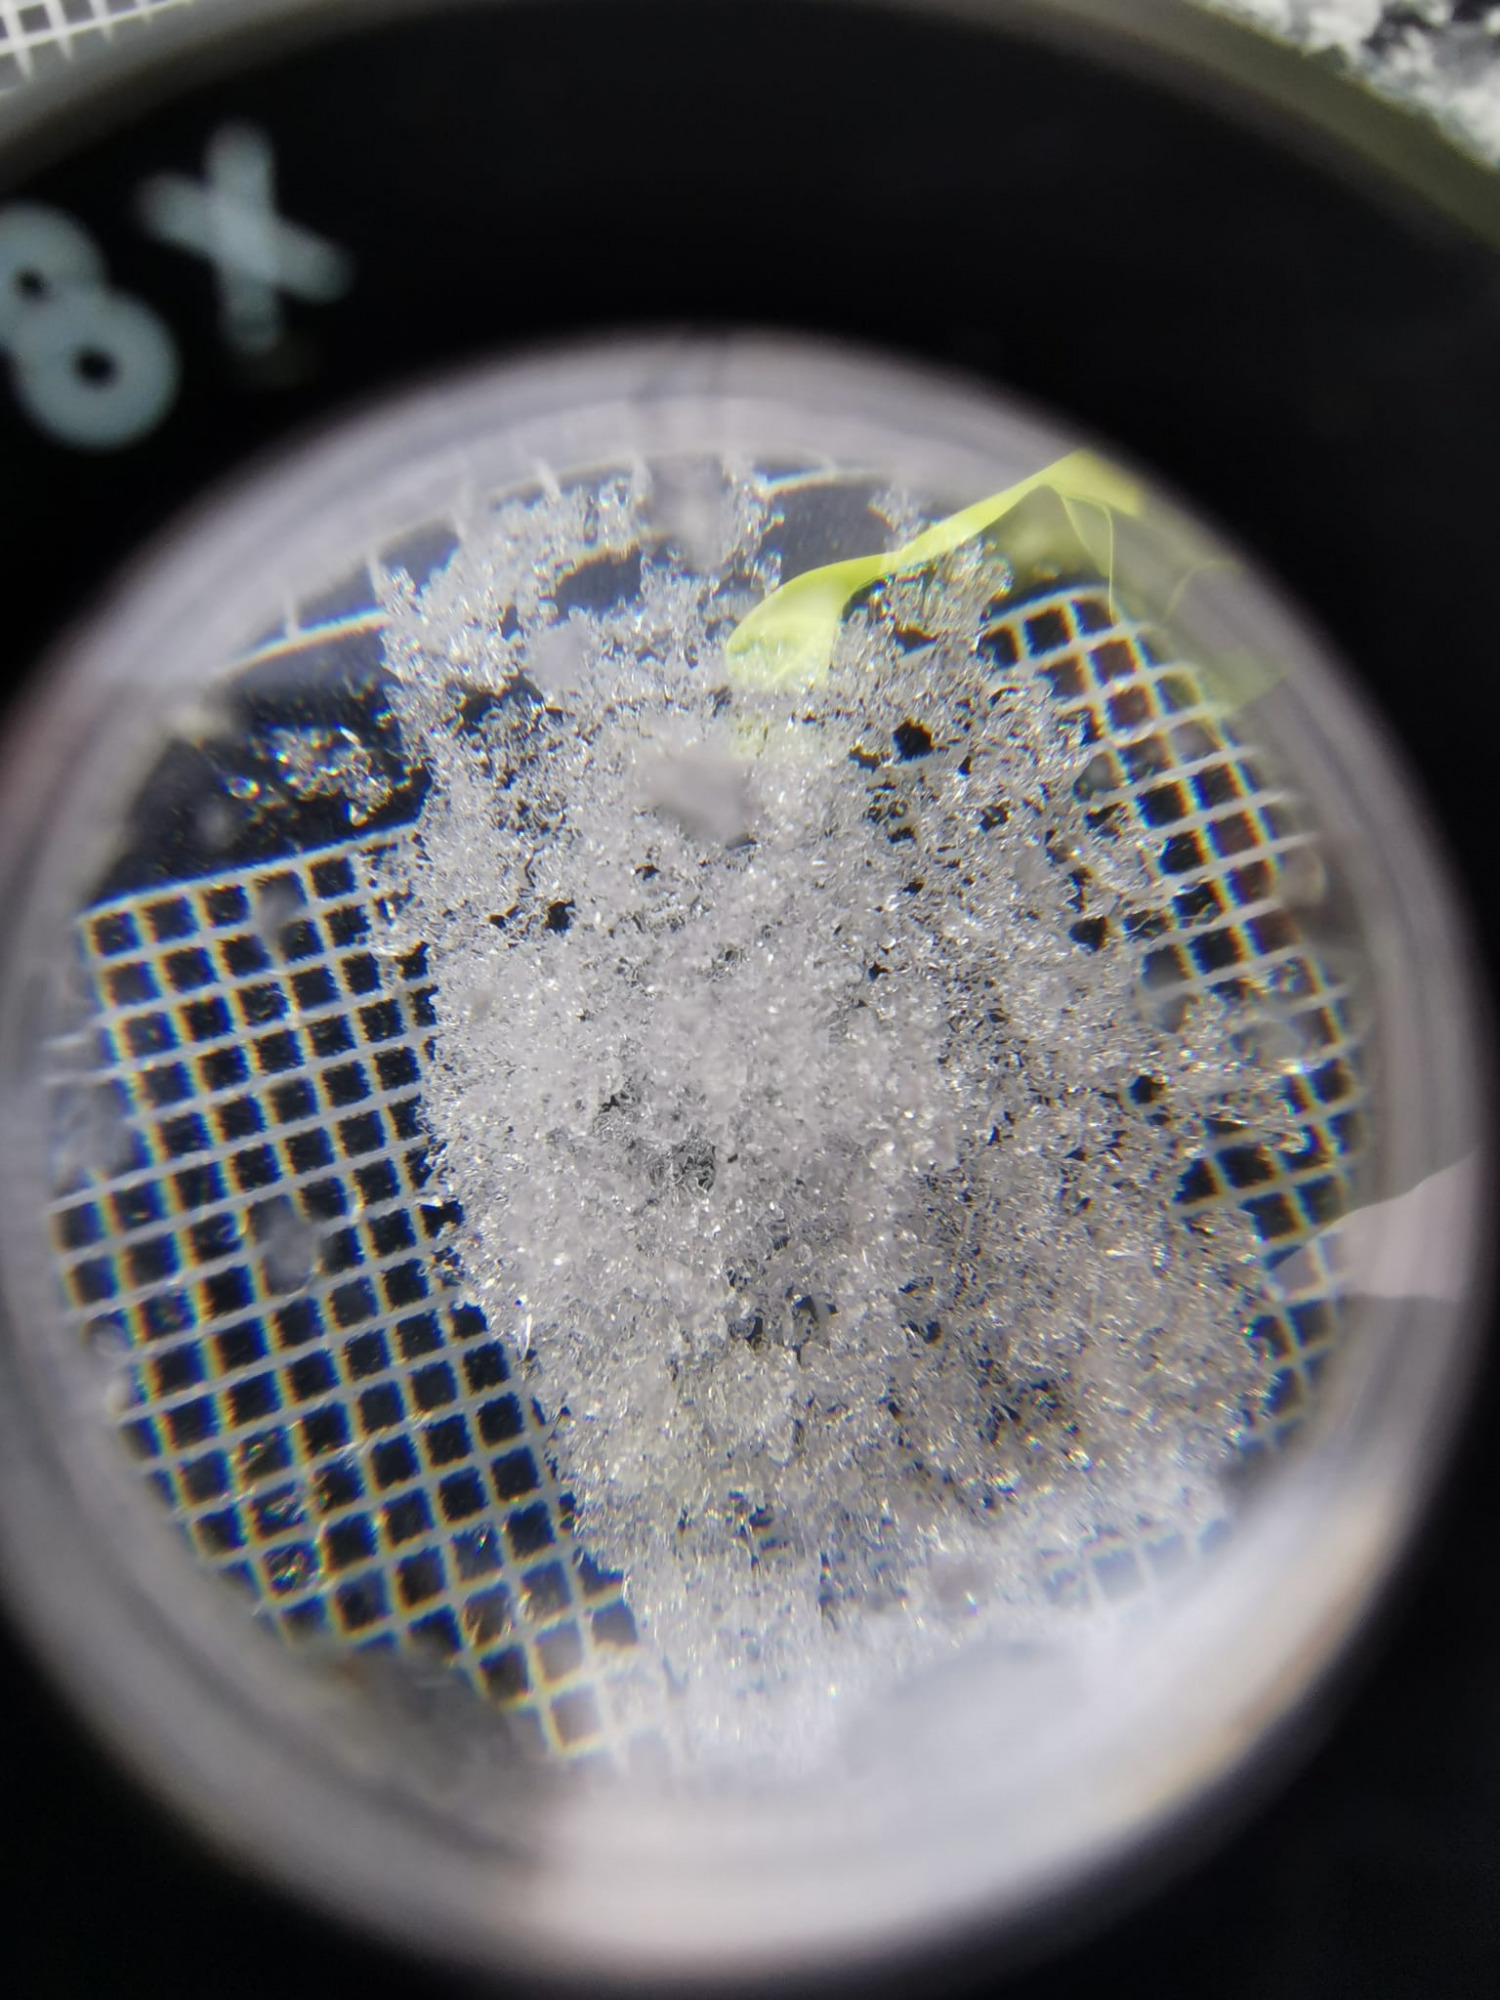  Jeden z typów śniegu widoczny pod mikroskopem